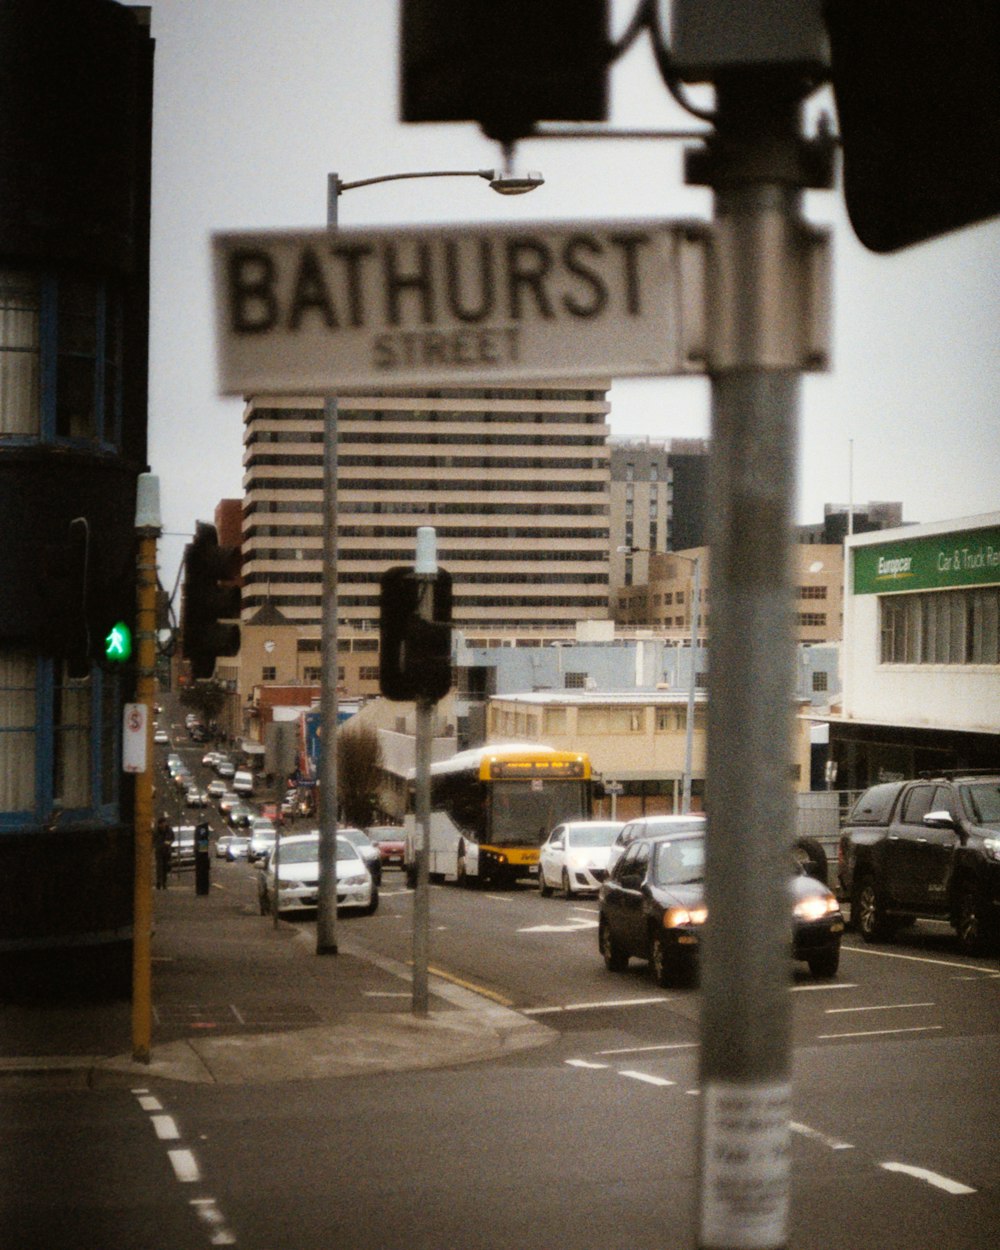 a street sign that reads bathhurst street